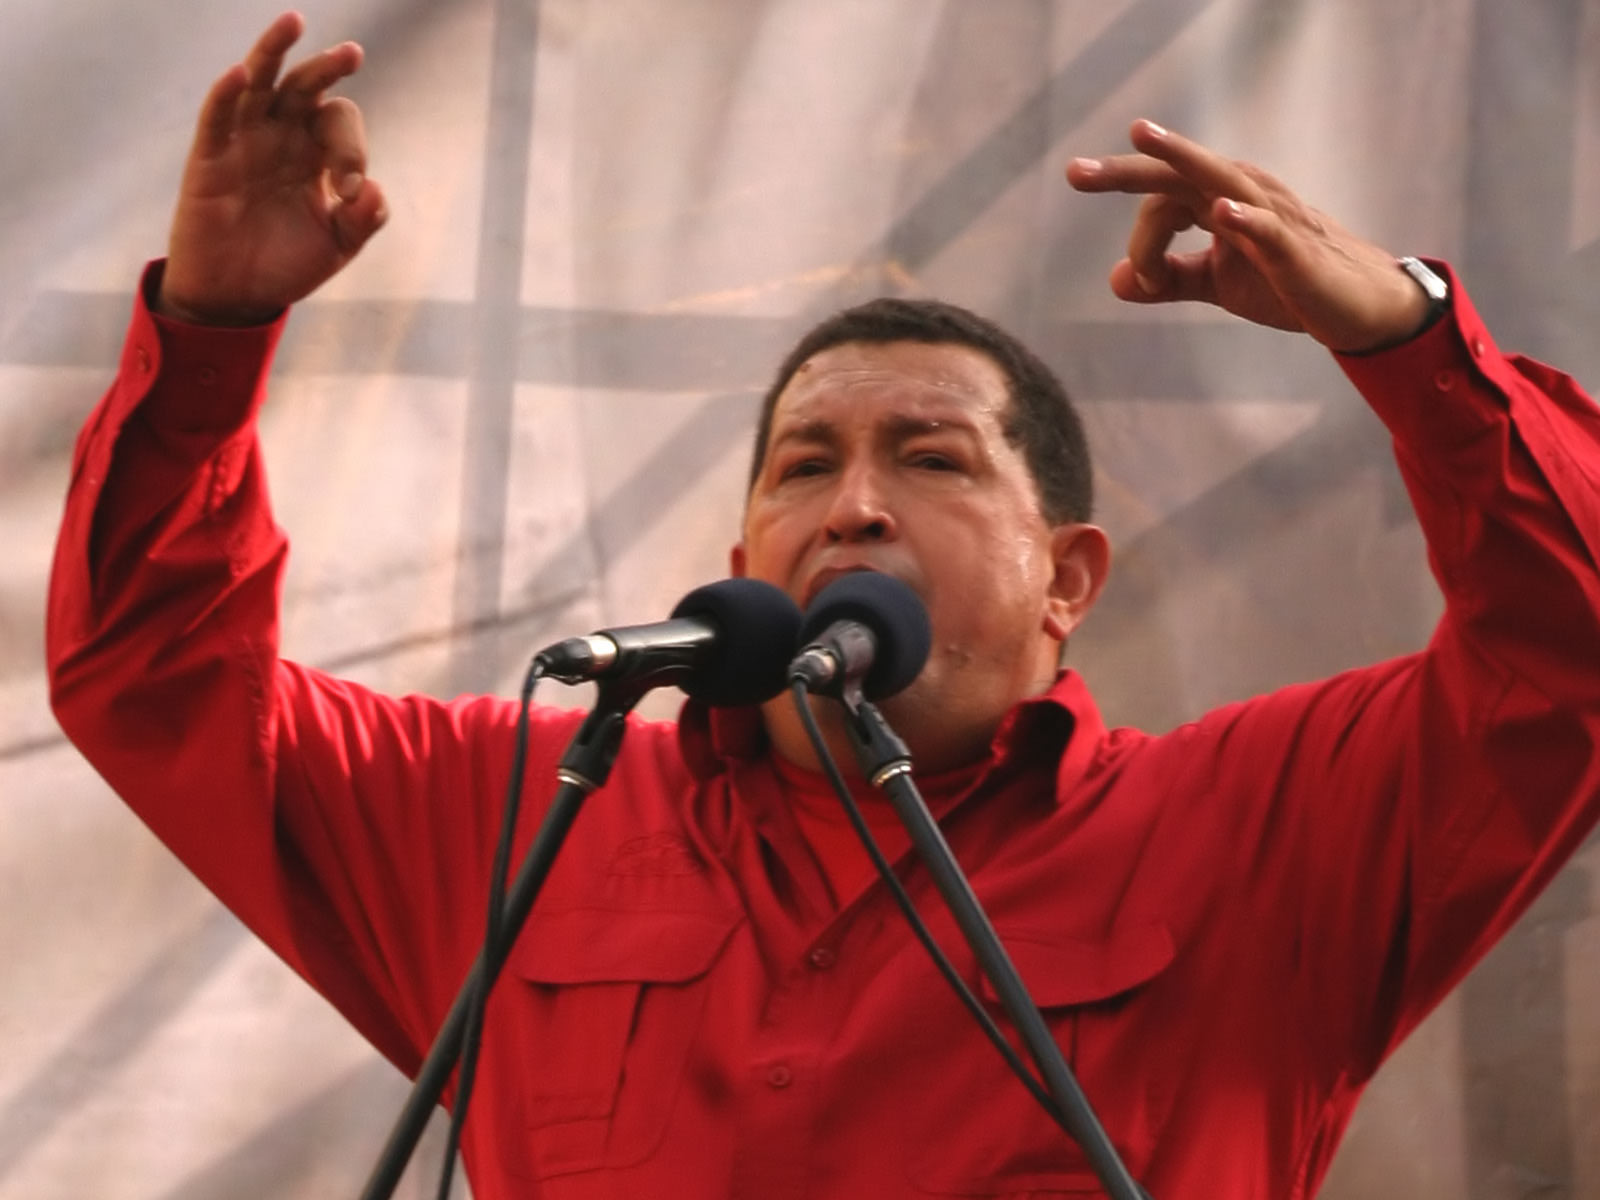 The late Hugo Chavez (Image: www.larednoticias.com)